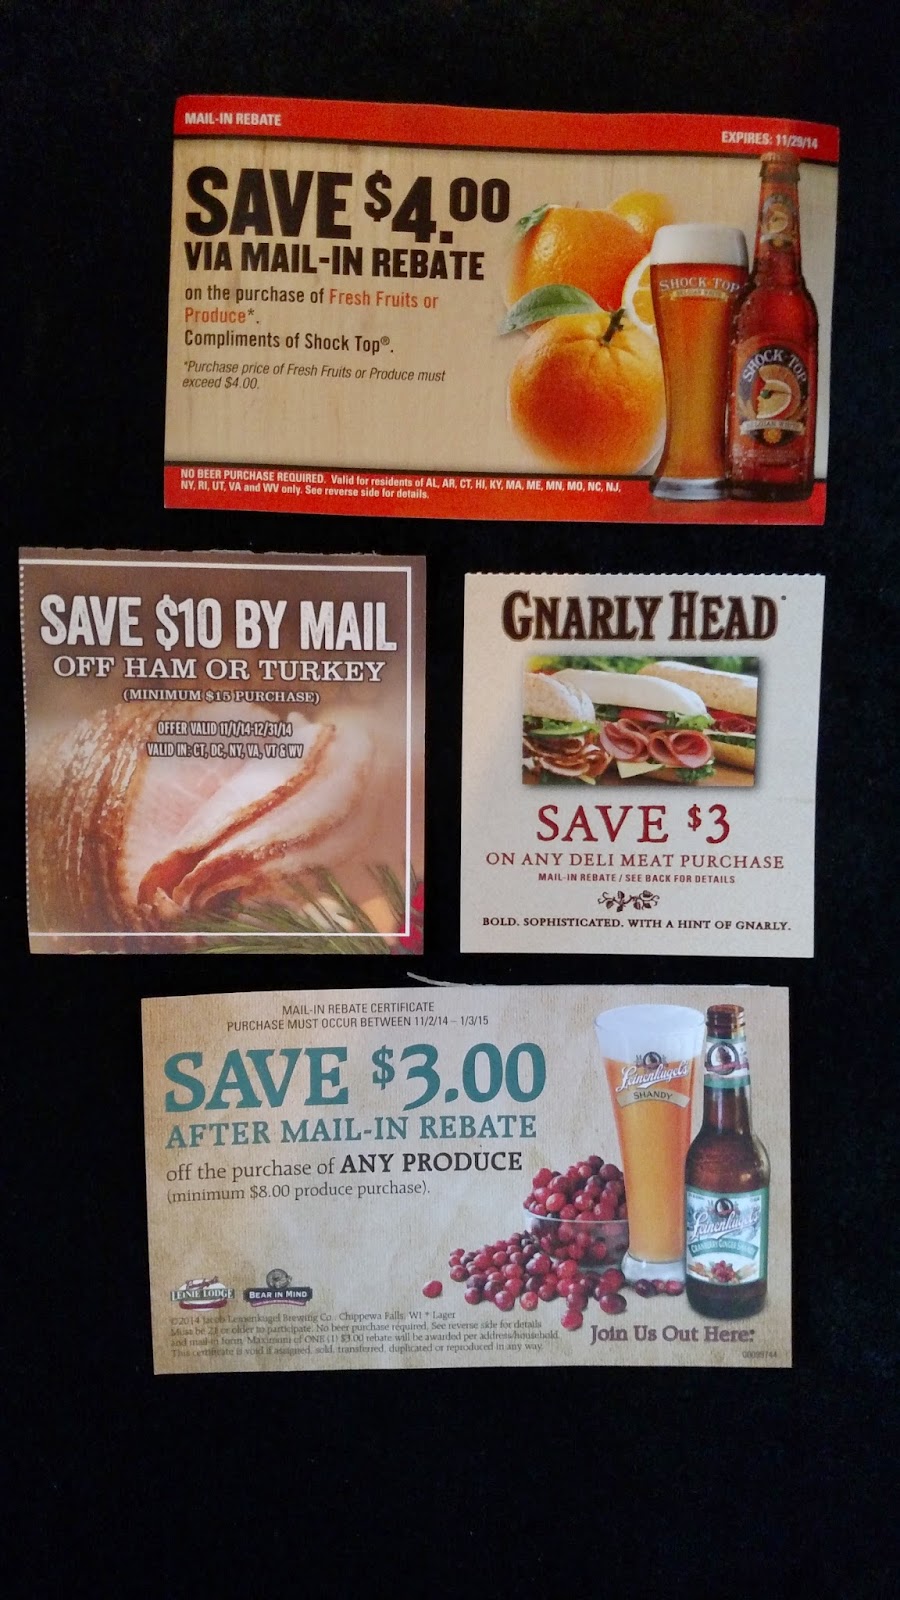 nbpr-beer-rebate-miller-coors-3-save-5-on-gift-cards-valid-12-1-1-2